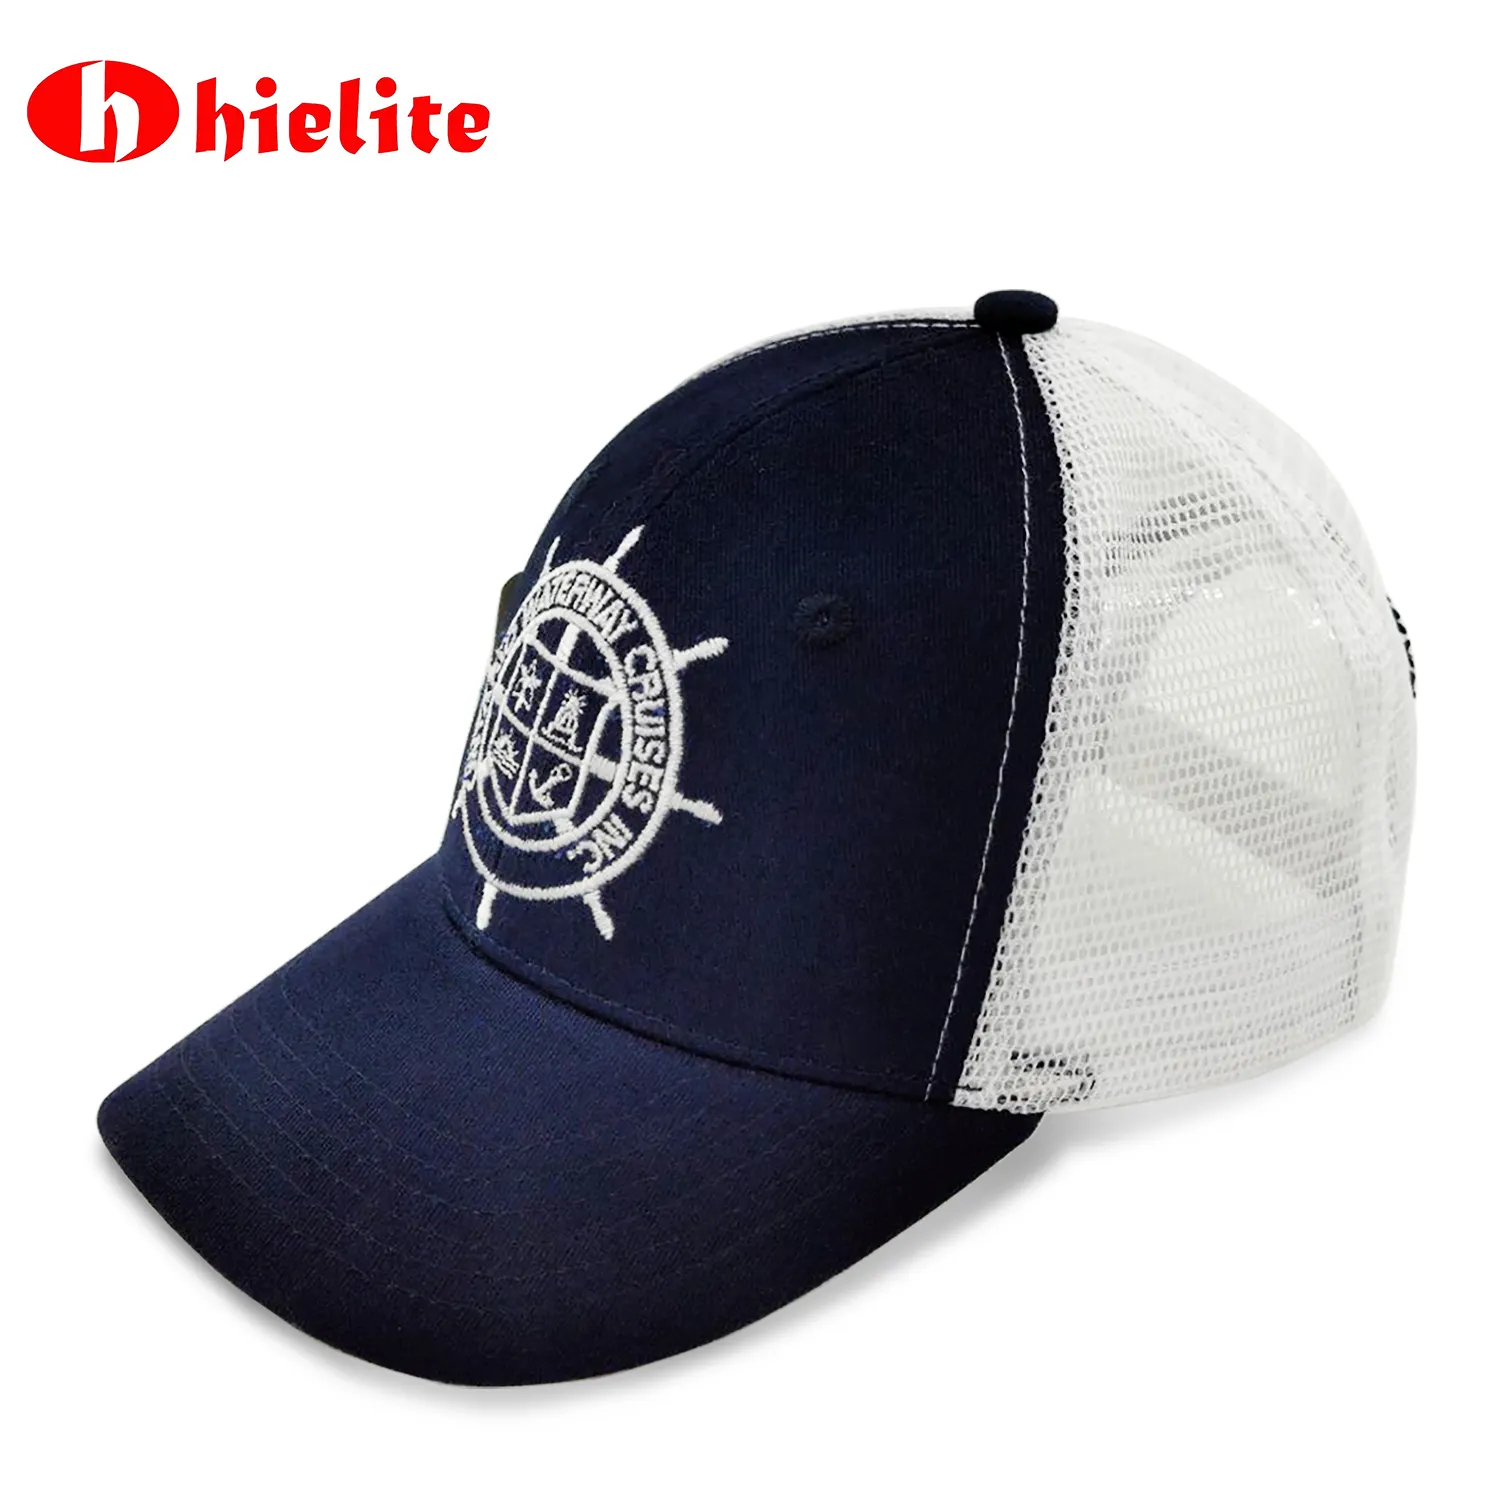 Atacado clássico escuro azul Snapback Trucker Cap com bordado branco e Netting Summer Wear Hat com fecho de plástico Snap